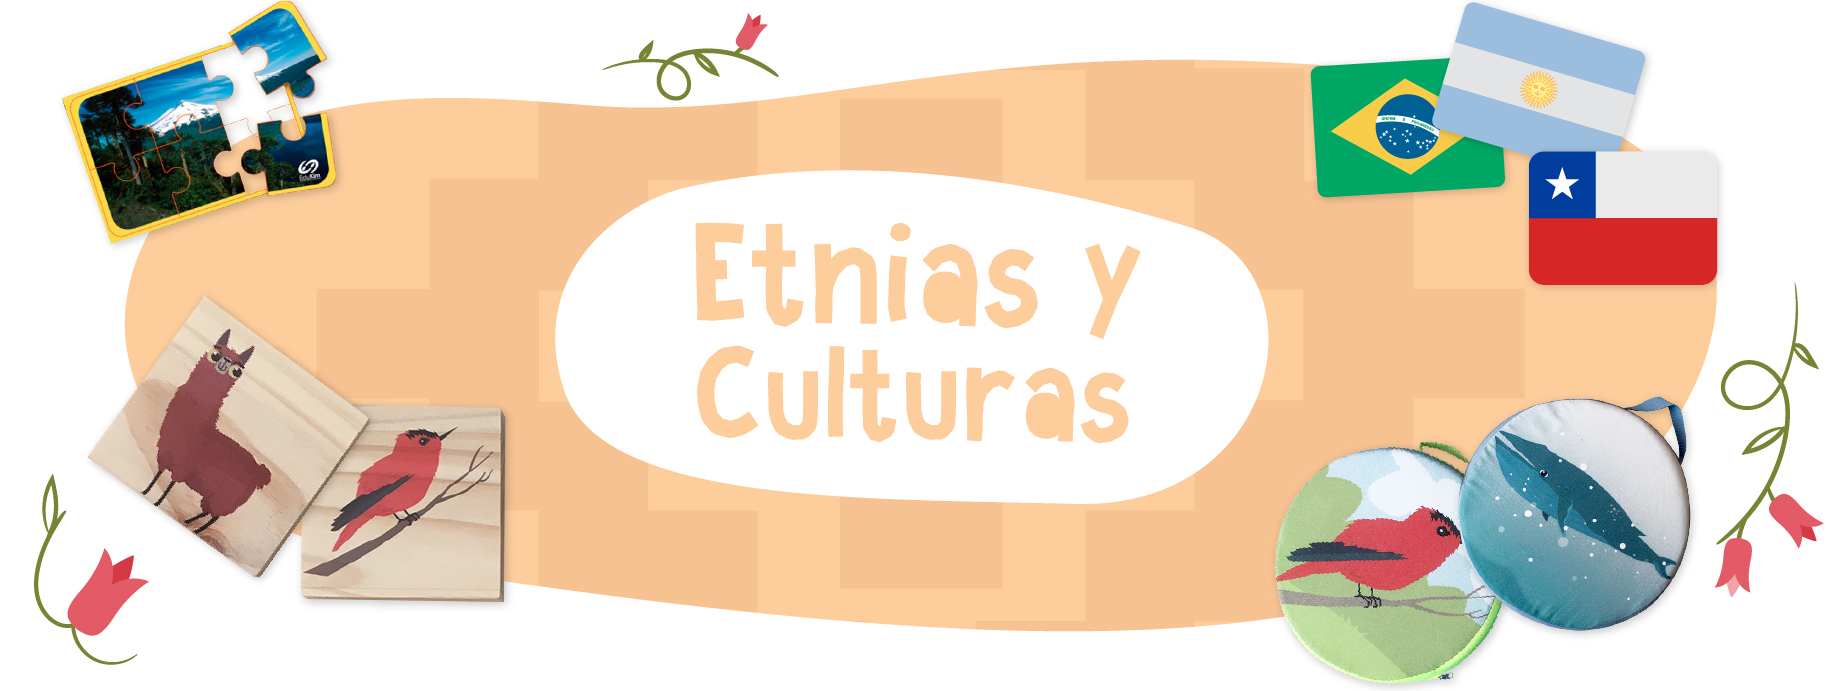 Etnias y Culturas